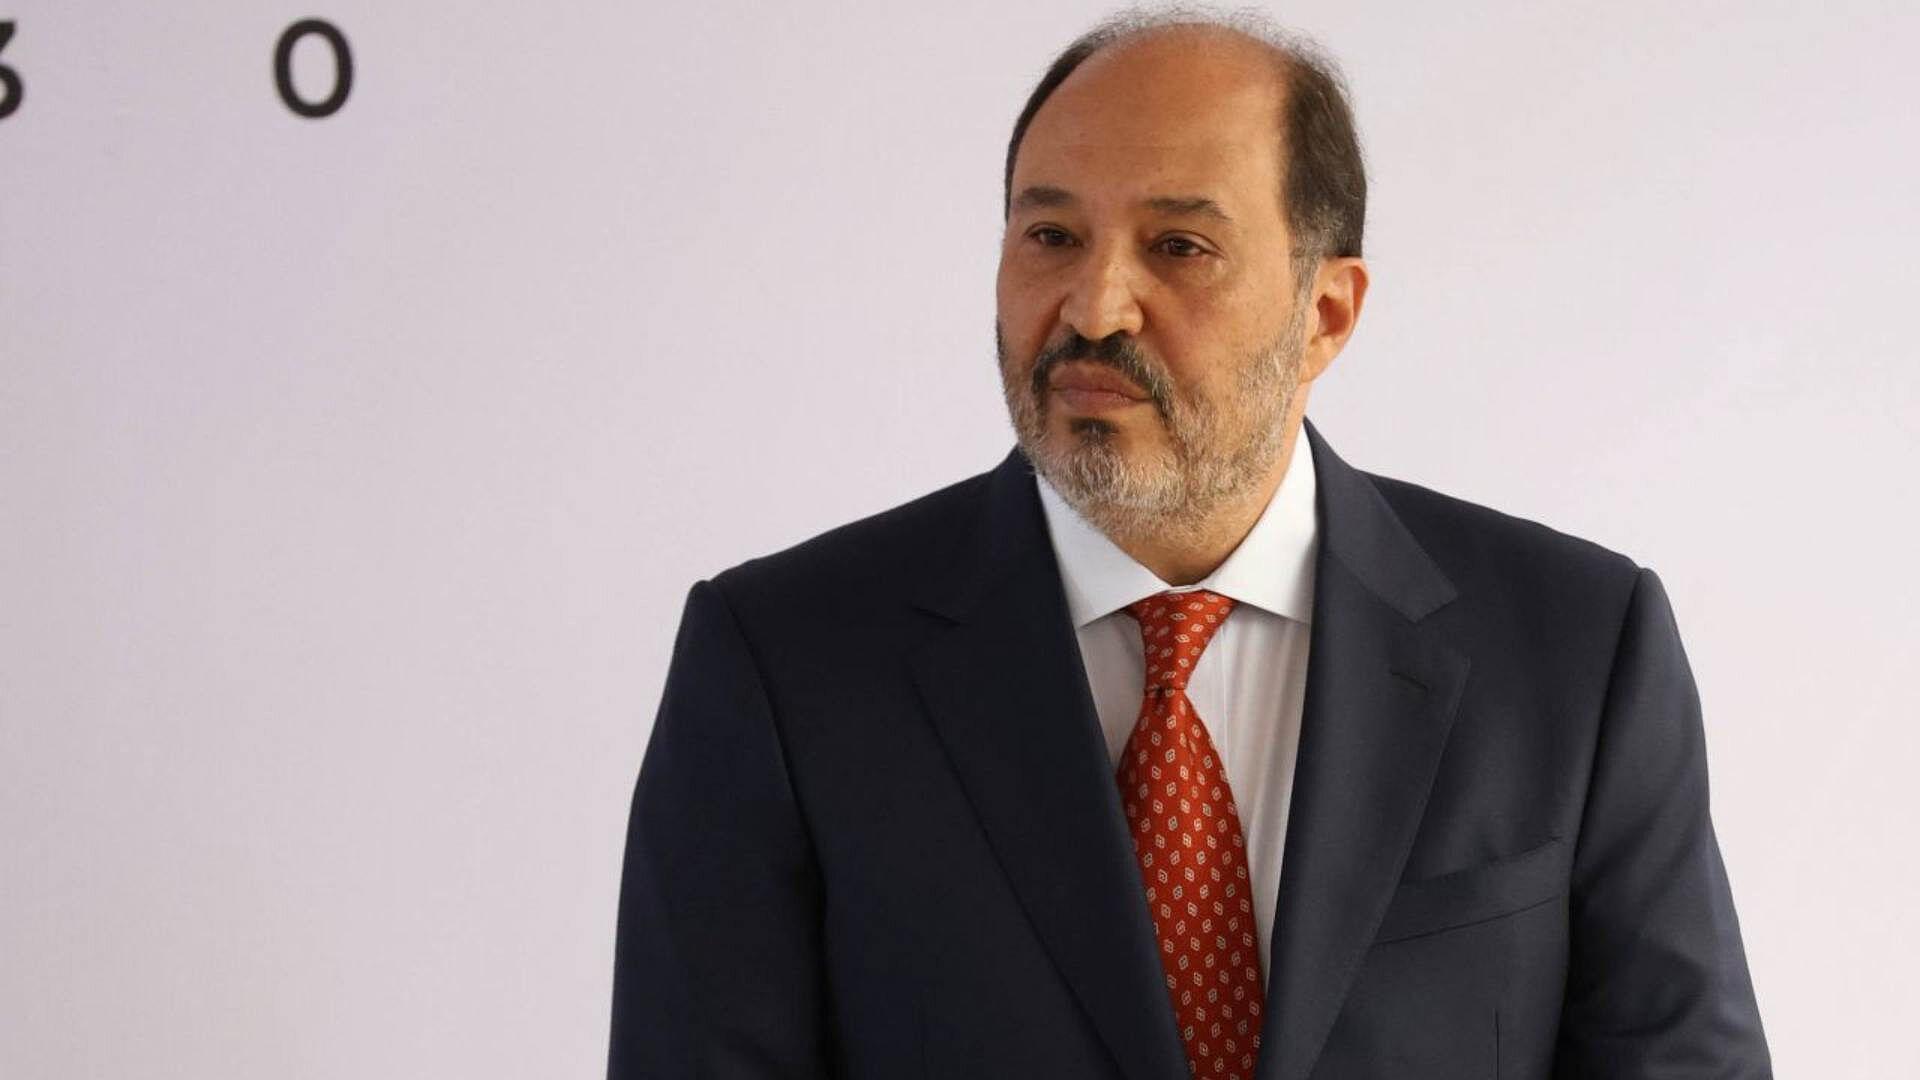 ¿Quién es Lázaro Cárdenas Batel, el próximo Jefe de Oficina de la Presidencia?